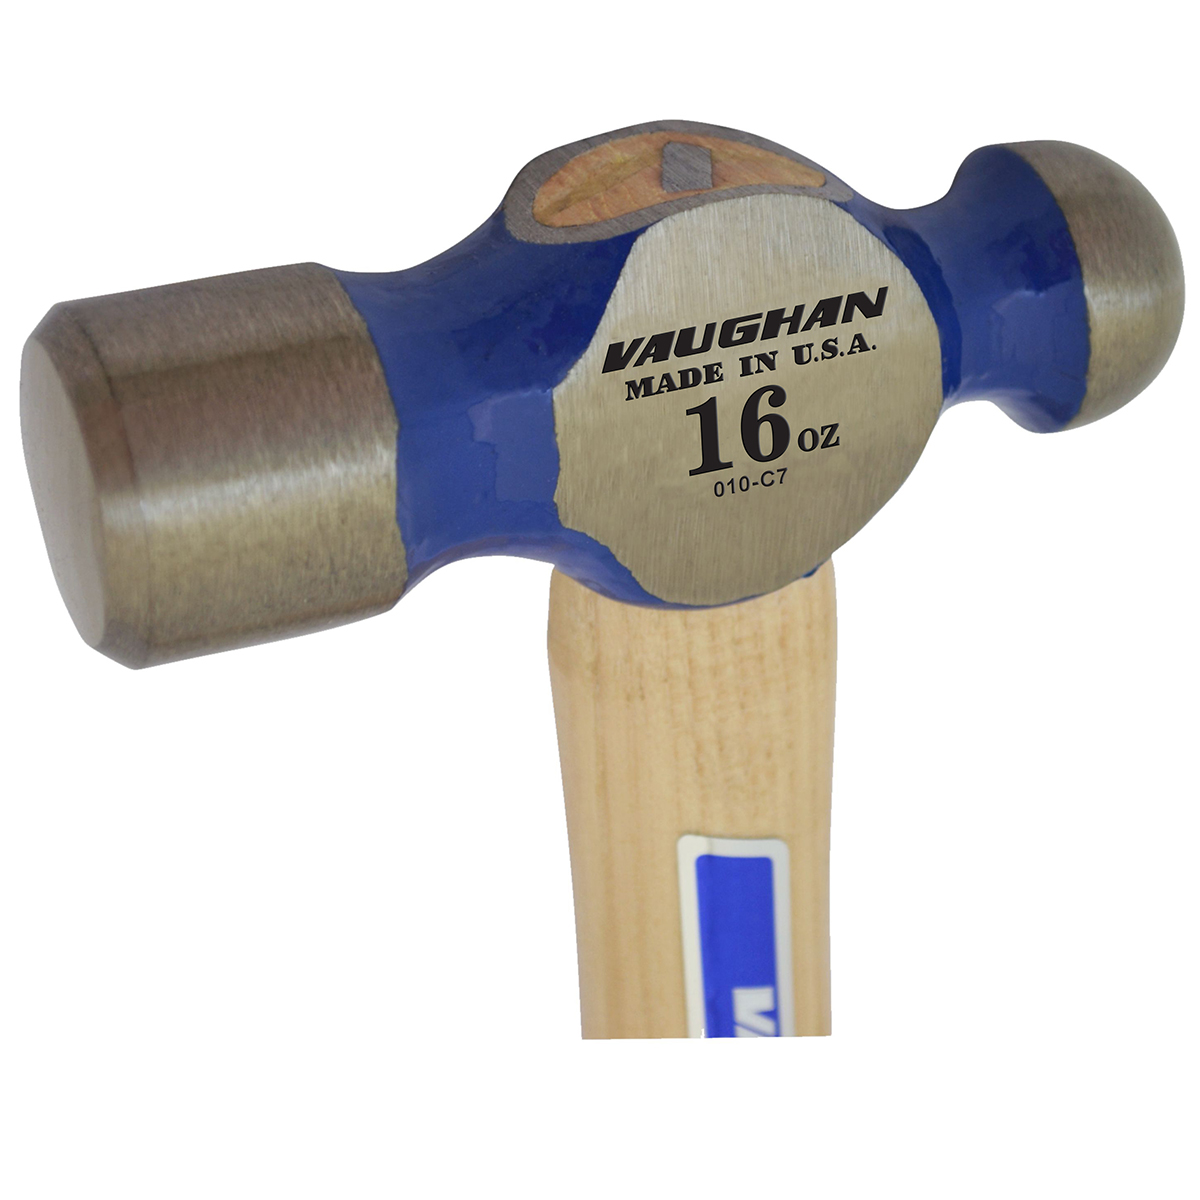 16-Ounce Head US Tape Vaughan 163-10 FS016 Fiberglass Handle Ball Pein Hammer 